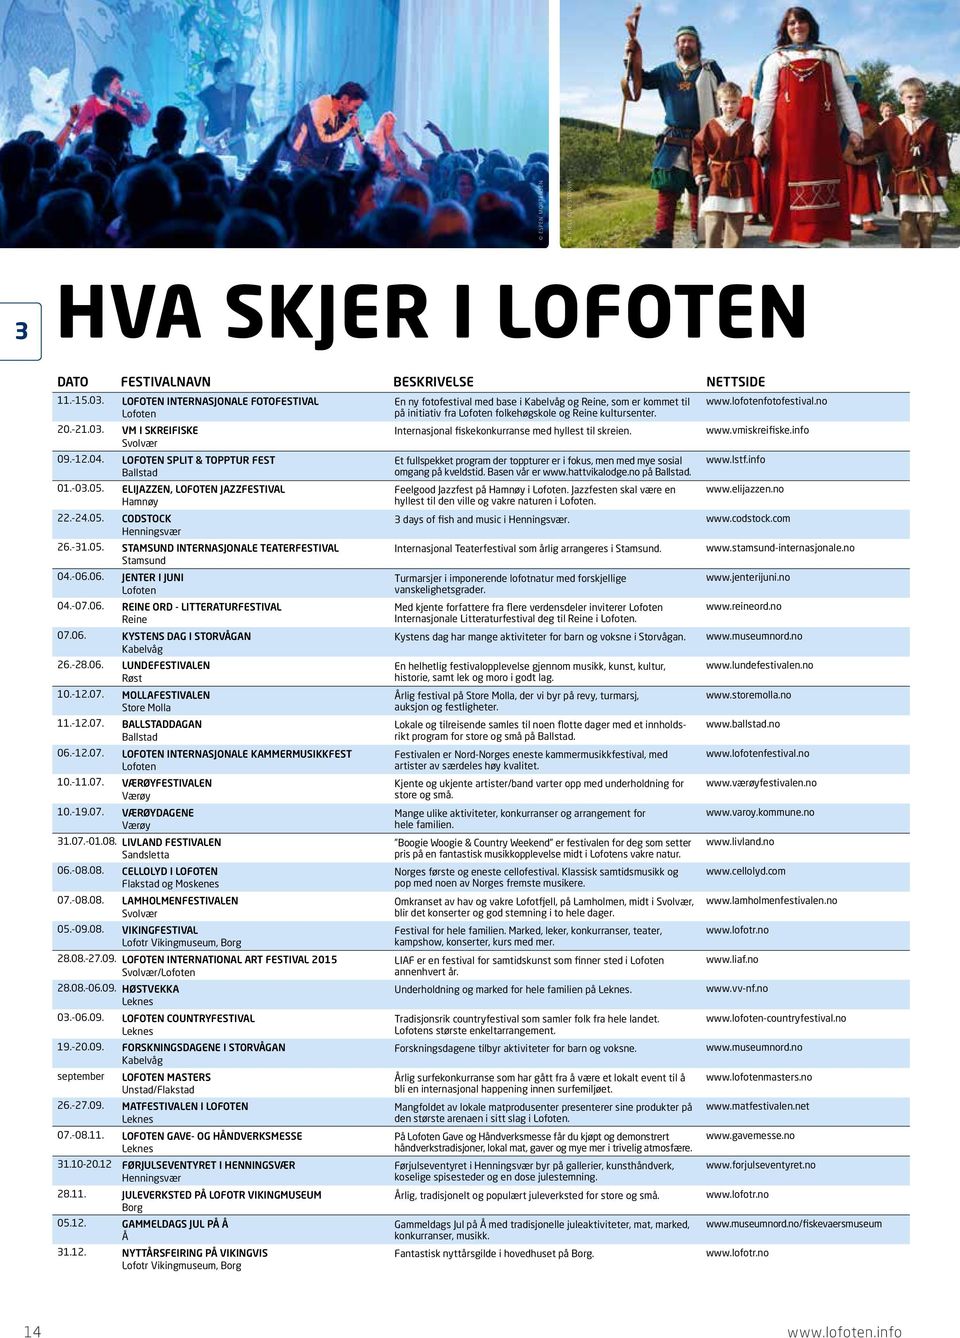 20.21.03. VM I SKREIFISKE Internasjonal fiskekonkurranse med hyllest til skreien. www.vmiskreifiske.info Svolvær 09.12.04.